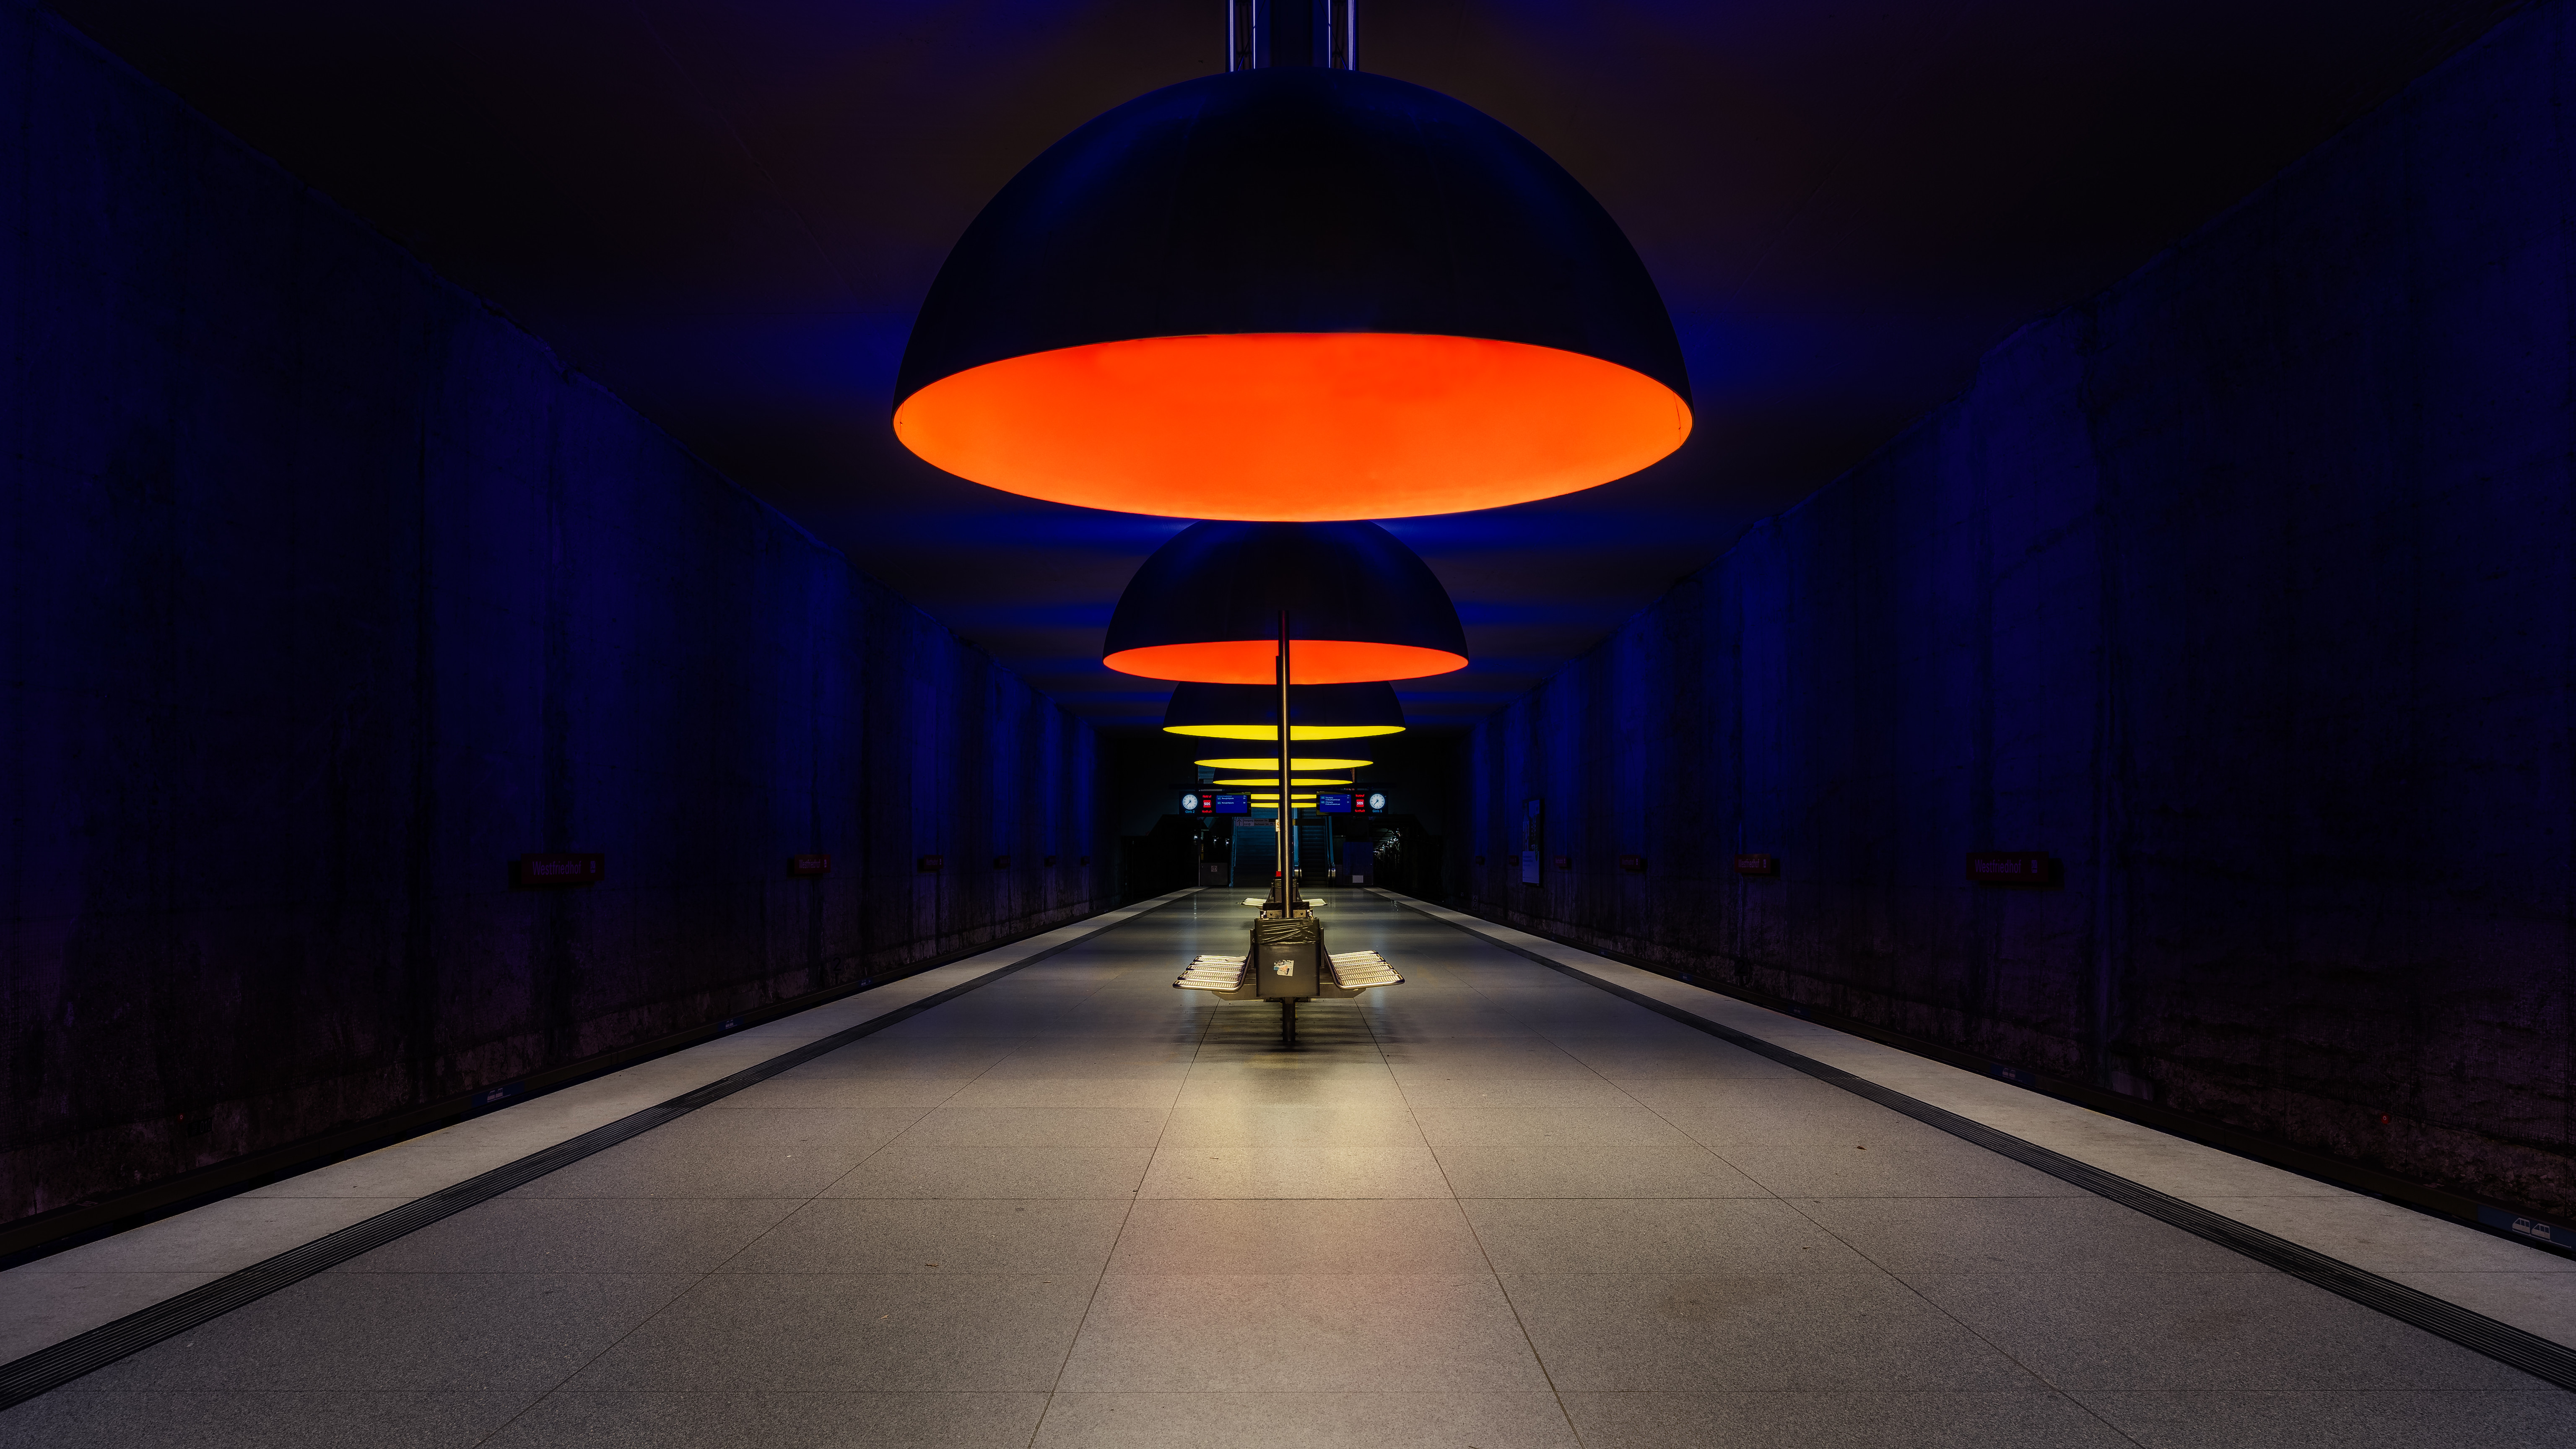 Munich Bavaria Westfriedhof Architecture Underground Platform Lights Symmetry Blue Orange 6144x3456